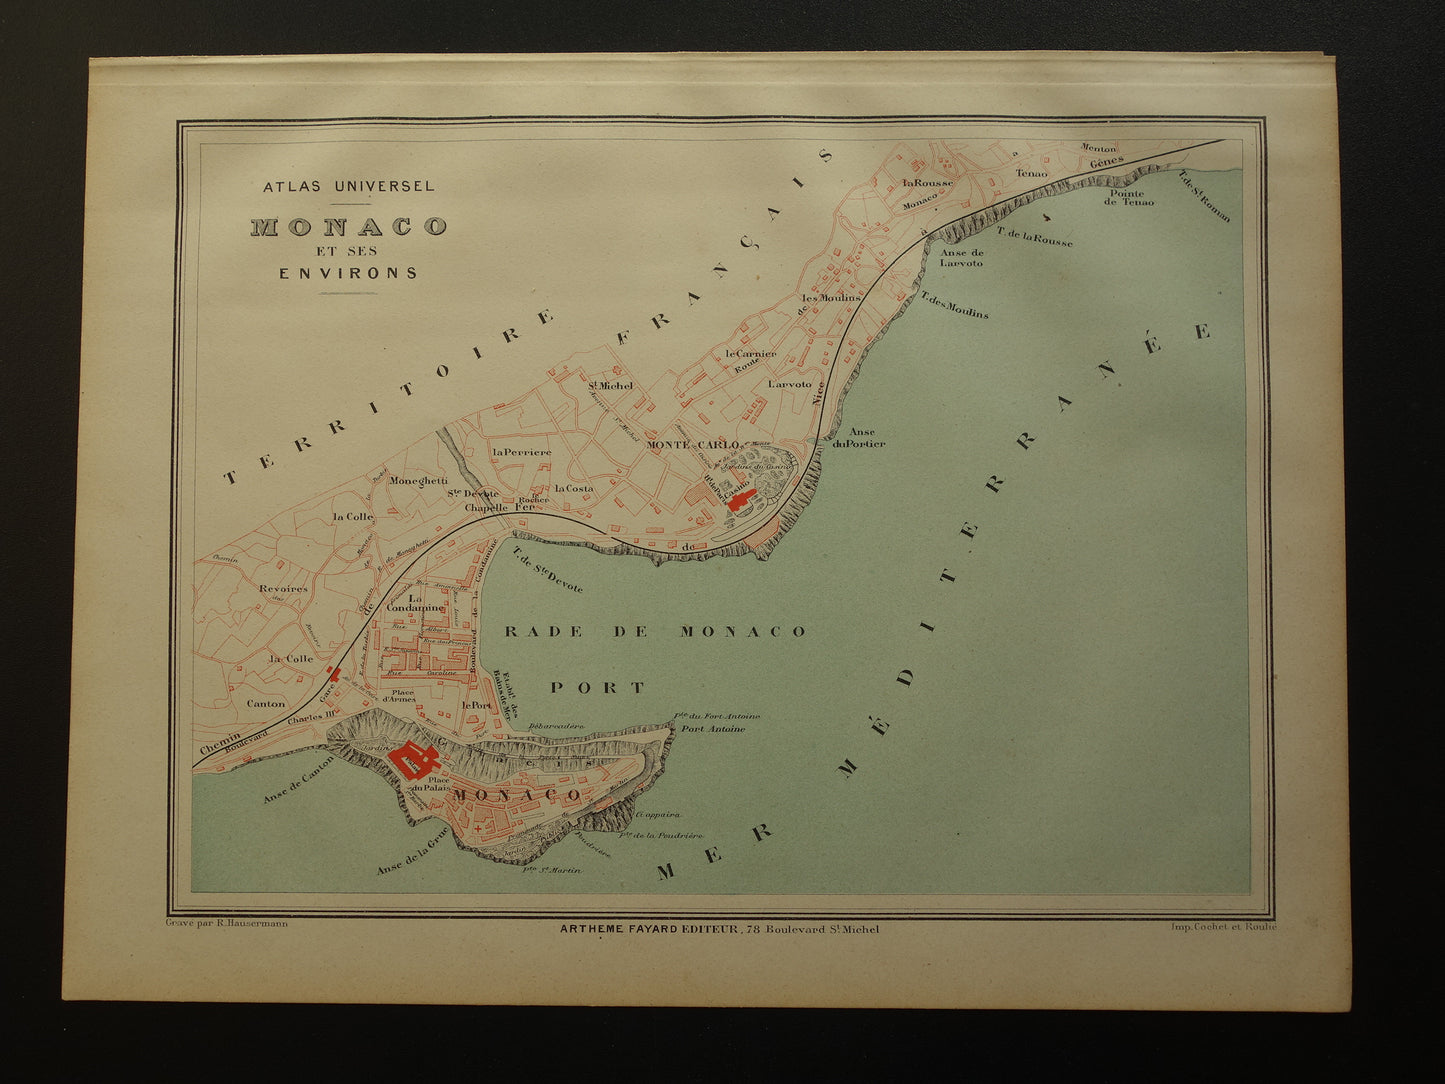 MONACO Oude kaart van Monaco uit 1879 originele antieke Franse plattegrond historische kaarten Monte Carlo